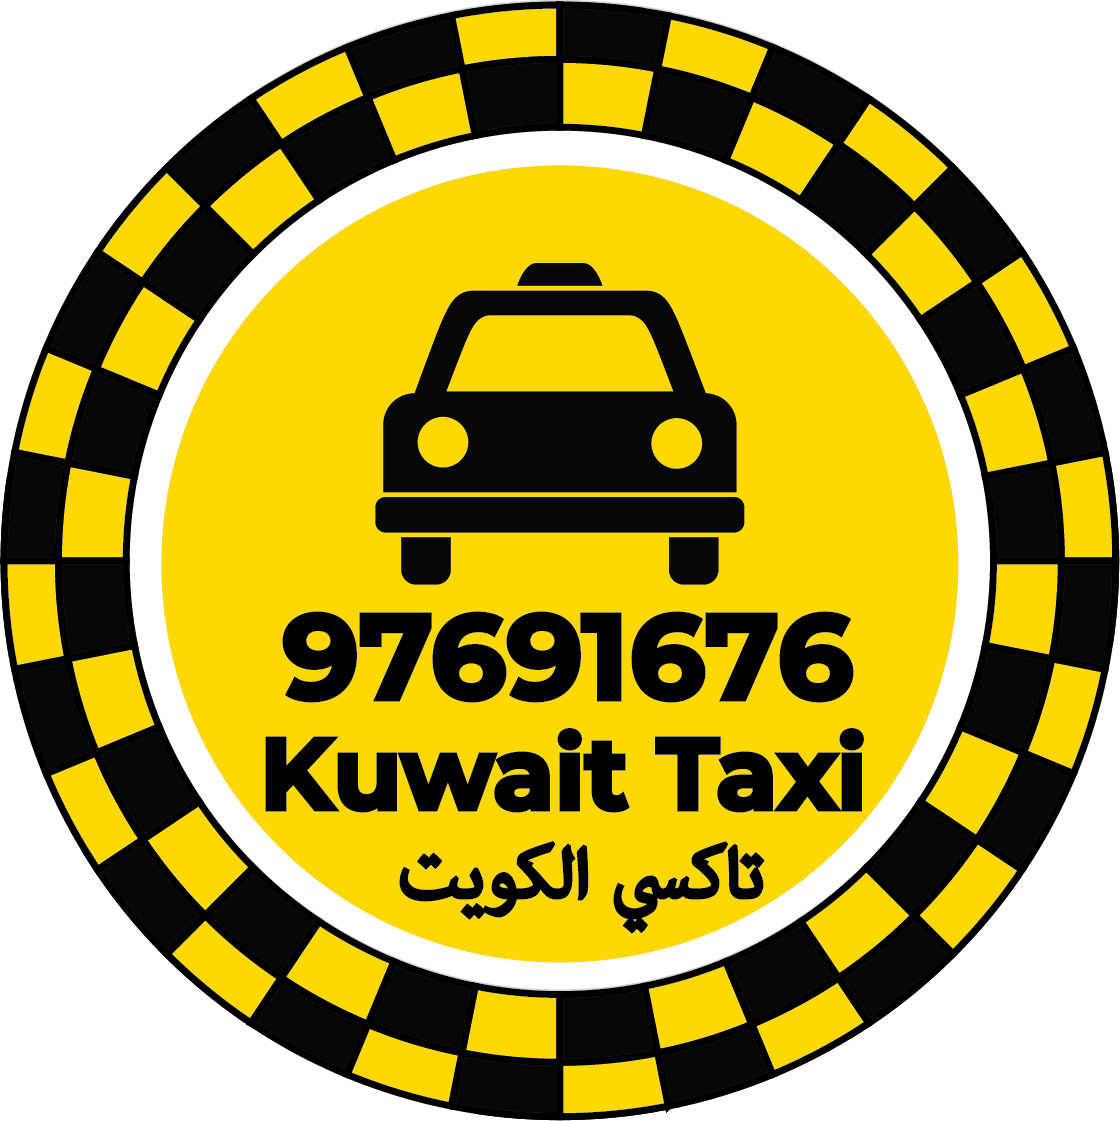 تاكسي شرق 97691676 – ارقام تاكسي في شرق